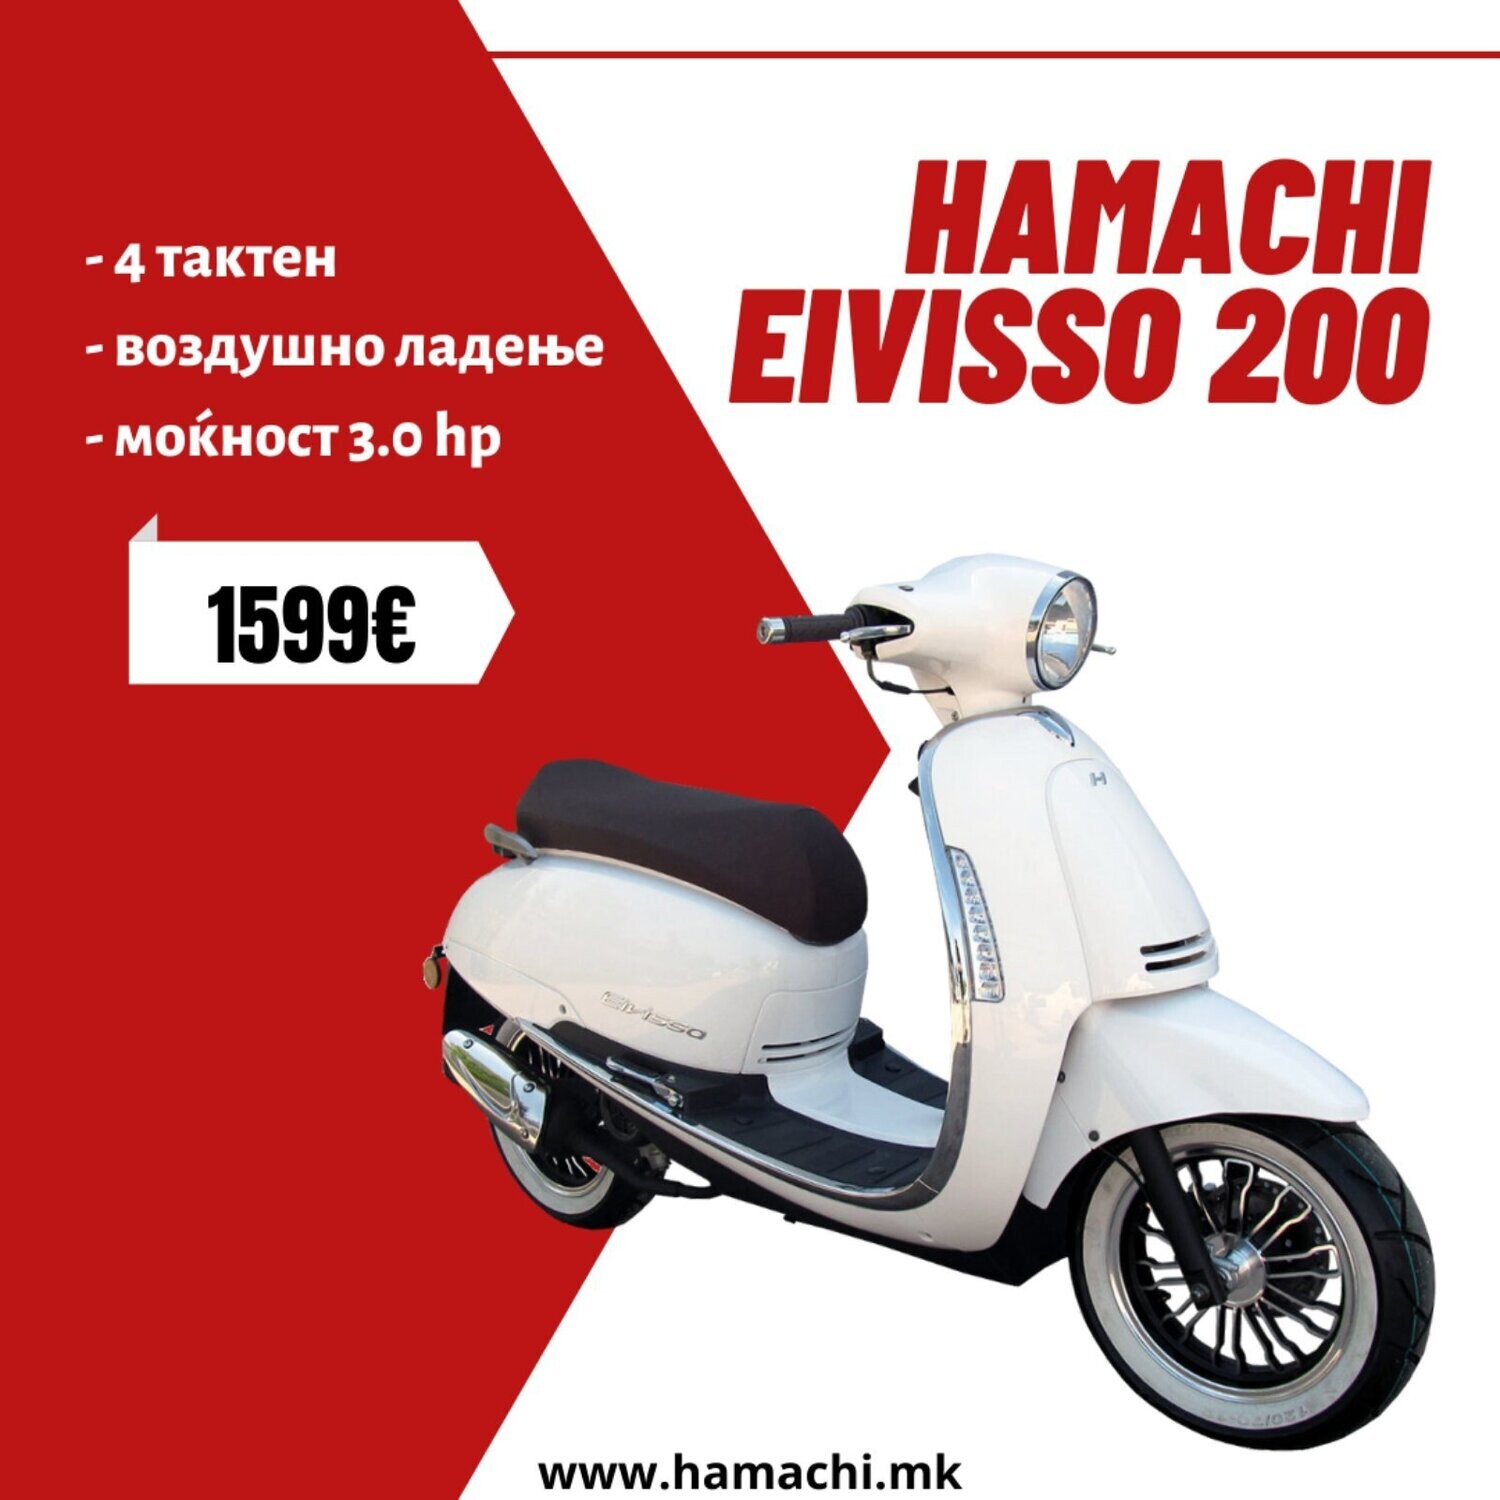 HAMACHI EIVISSO 200